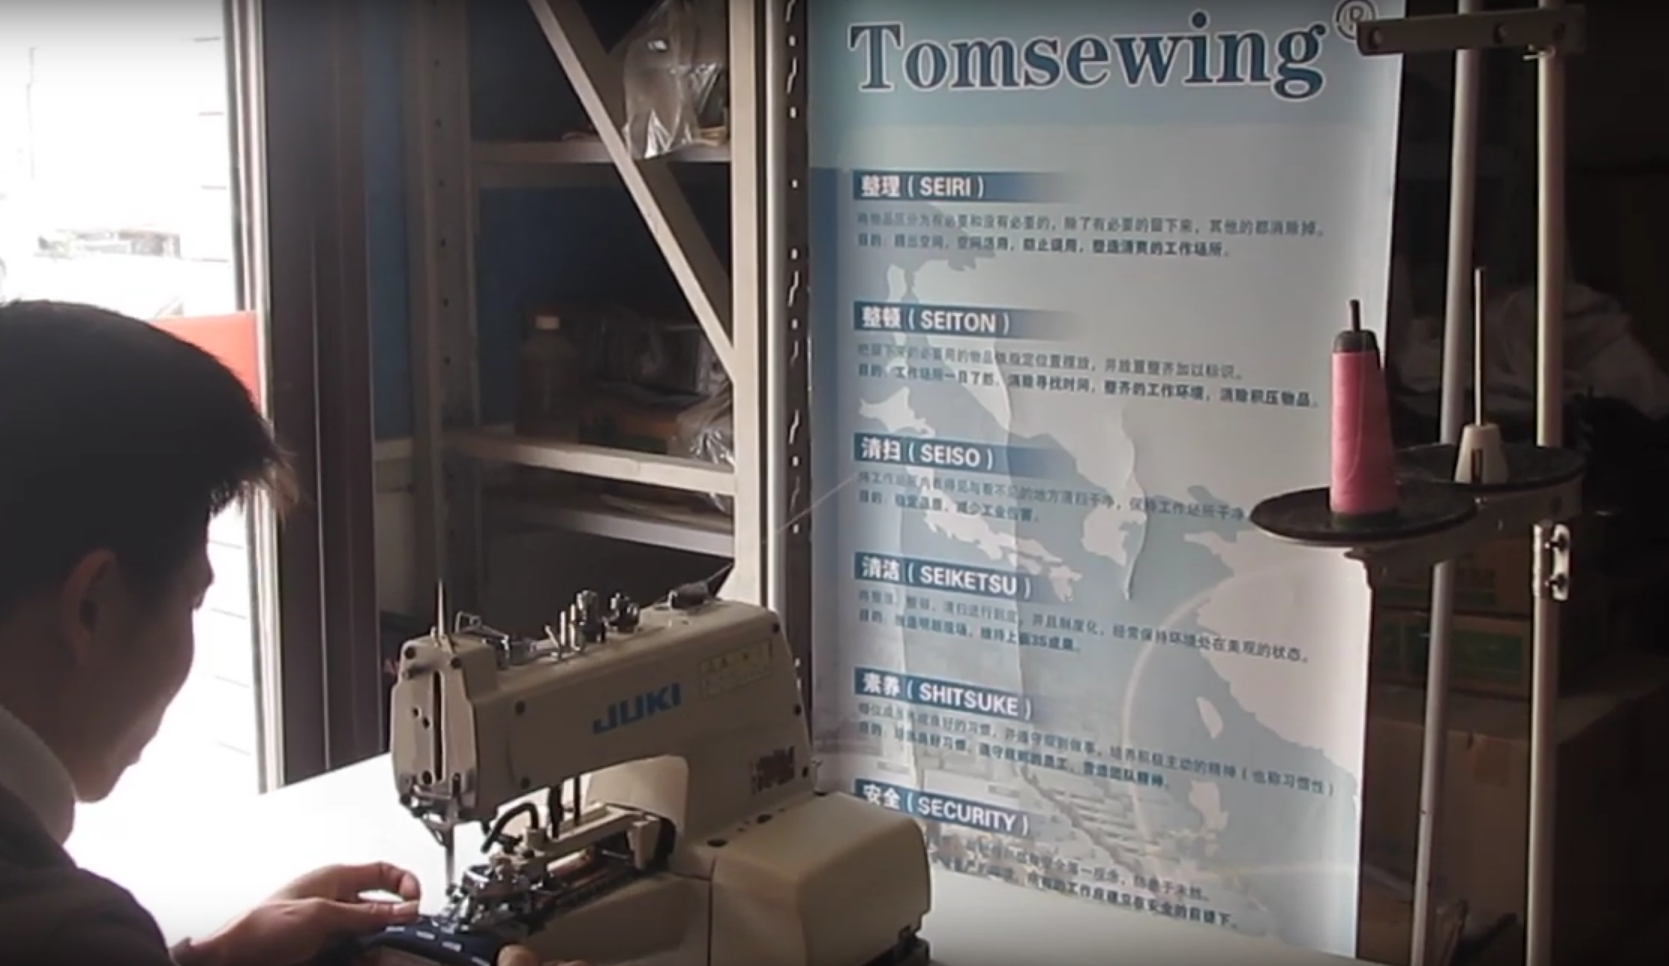 Juki MB1373 Chainstitch Button Sewer Sewing Machine